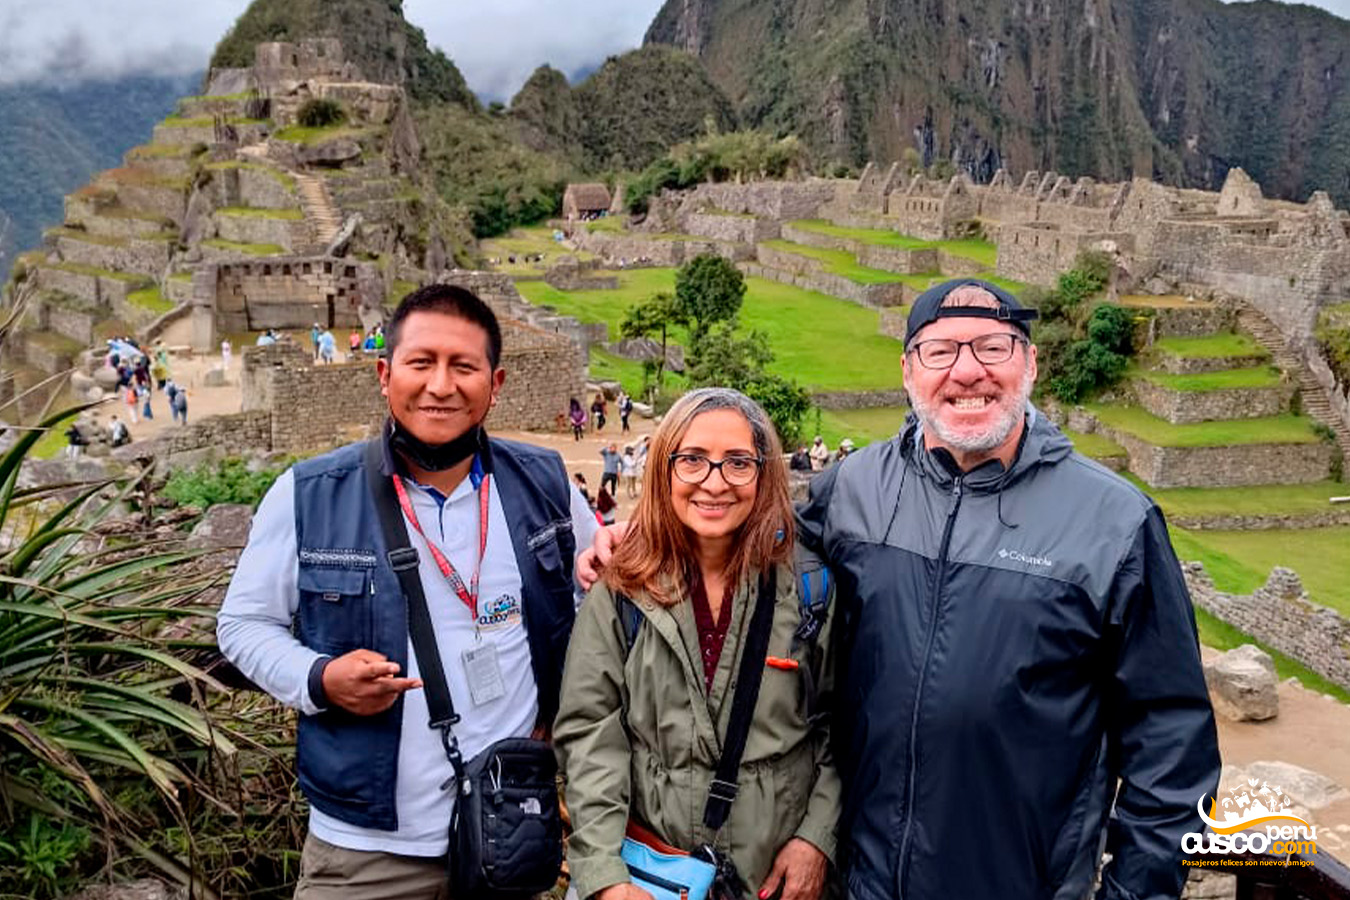 Servicio de guiado a dos turistas en Machu Picchu Fuente: CuscoPeru.com 